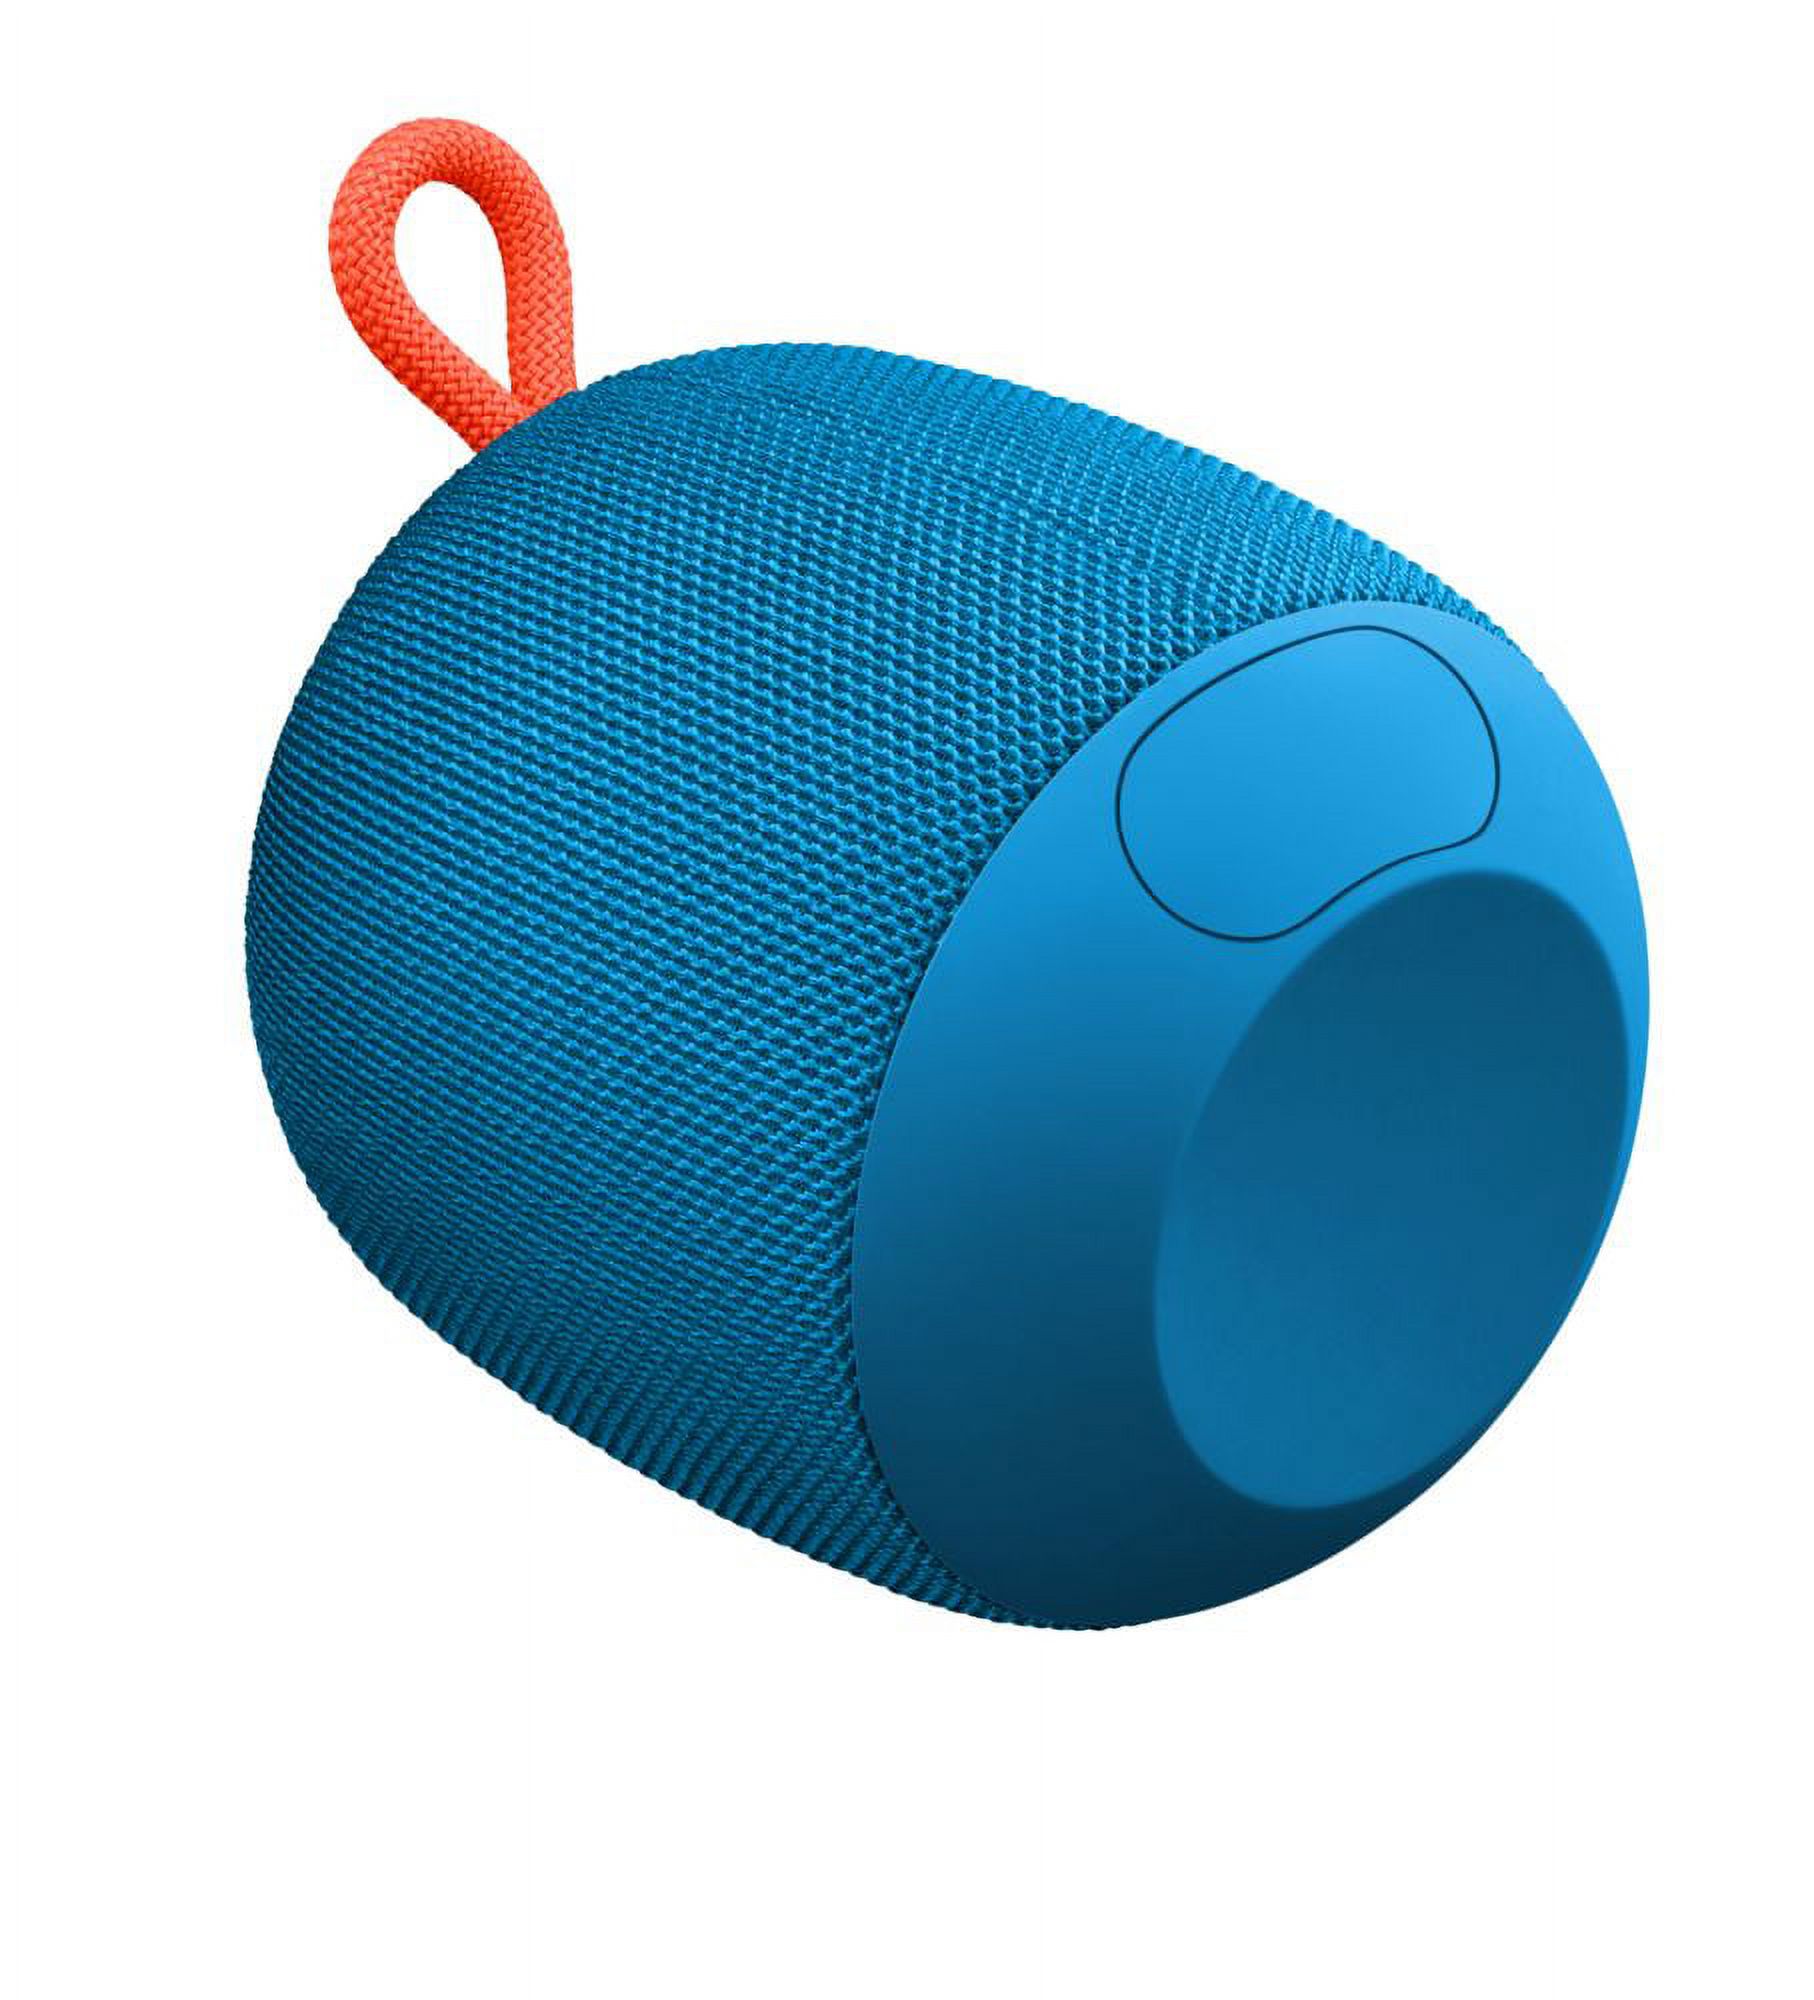 Ultimate Ears WONDERBOOM Portable Bluetooth Speaker Walmart Exclusive- Blue - image 4 of 10